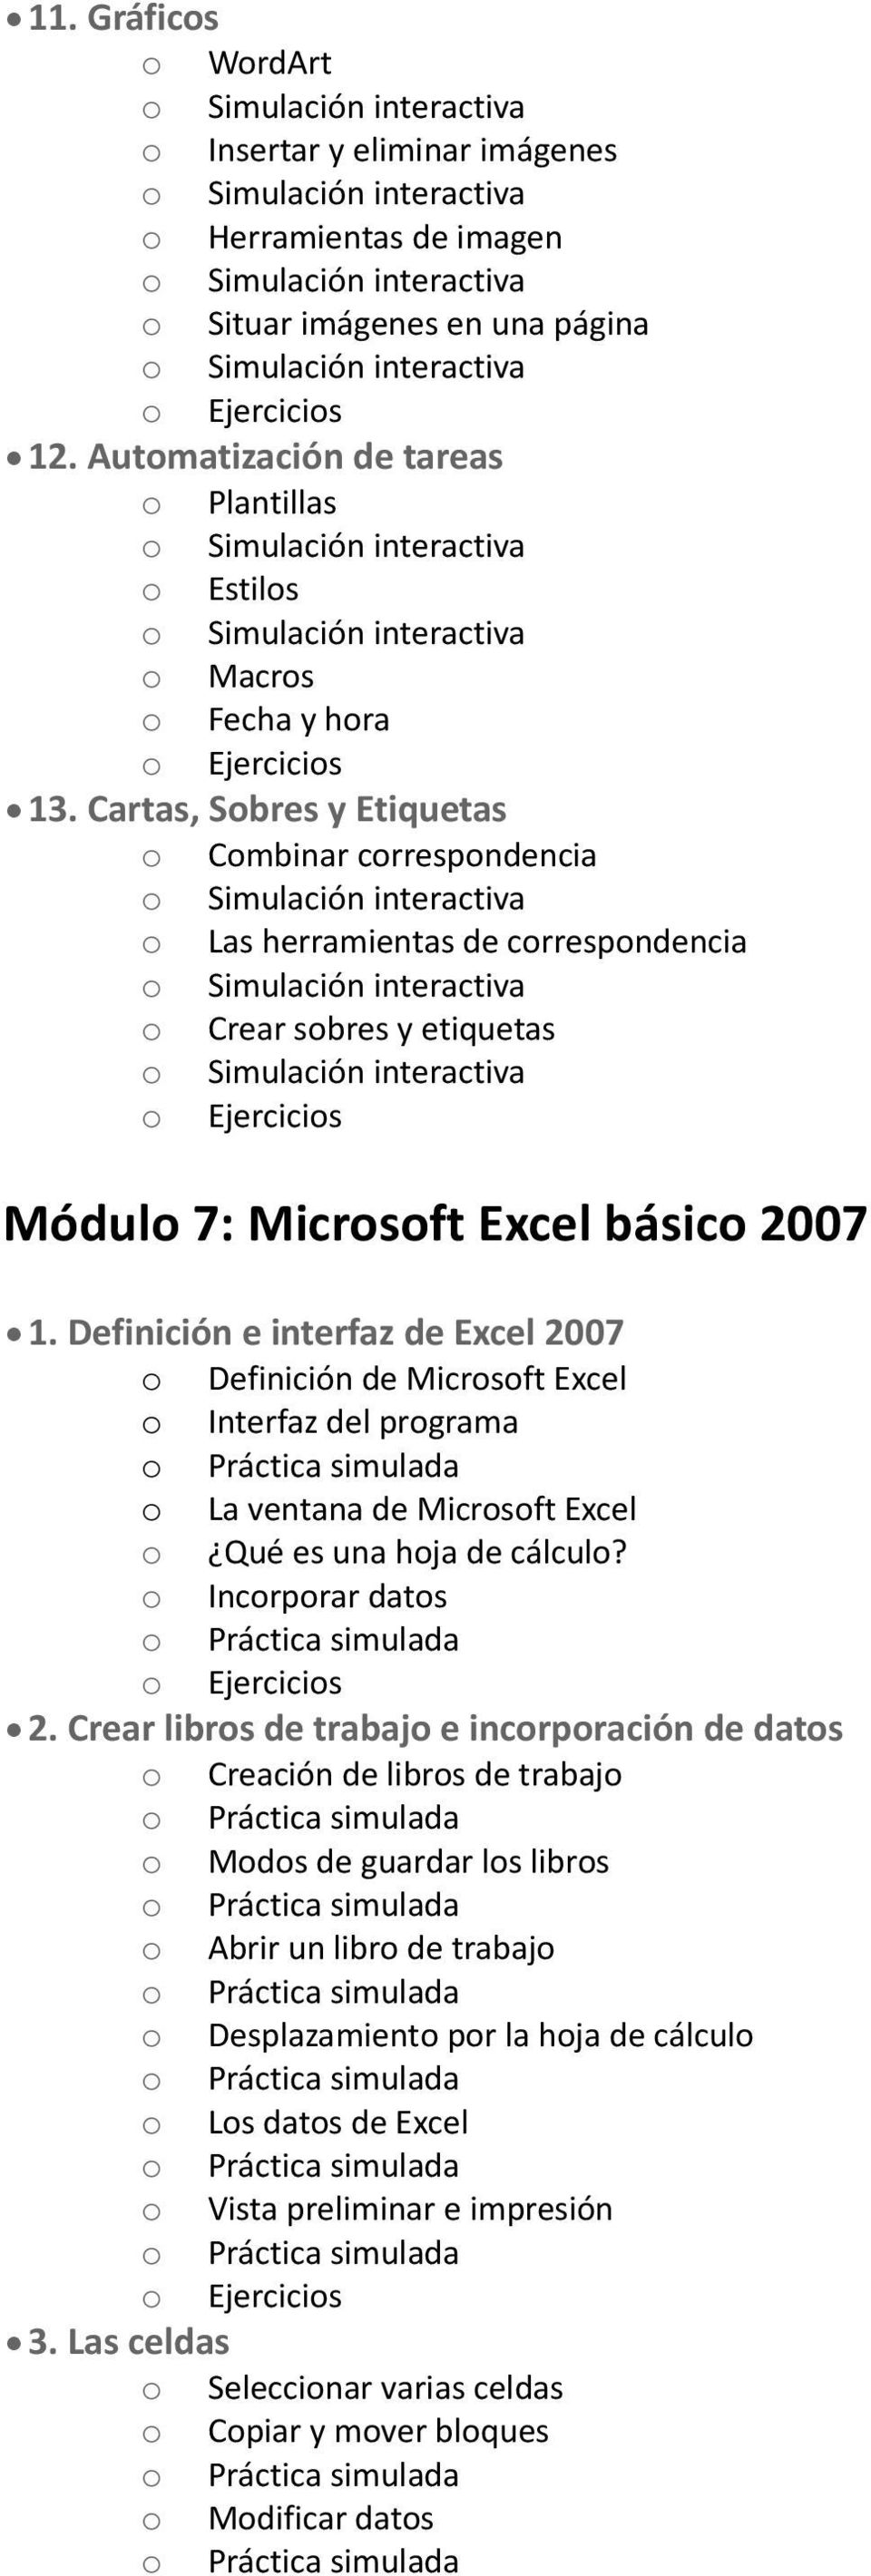 Definición e interfaz de Excel 2007 o Definición de Microsoft Excel o Interfaz del programa o La ventana de Microsoft Excel o Qué es una hoja de cálculo? o Incorporar datos 2.